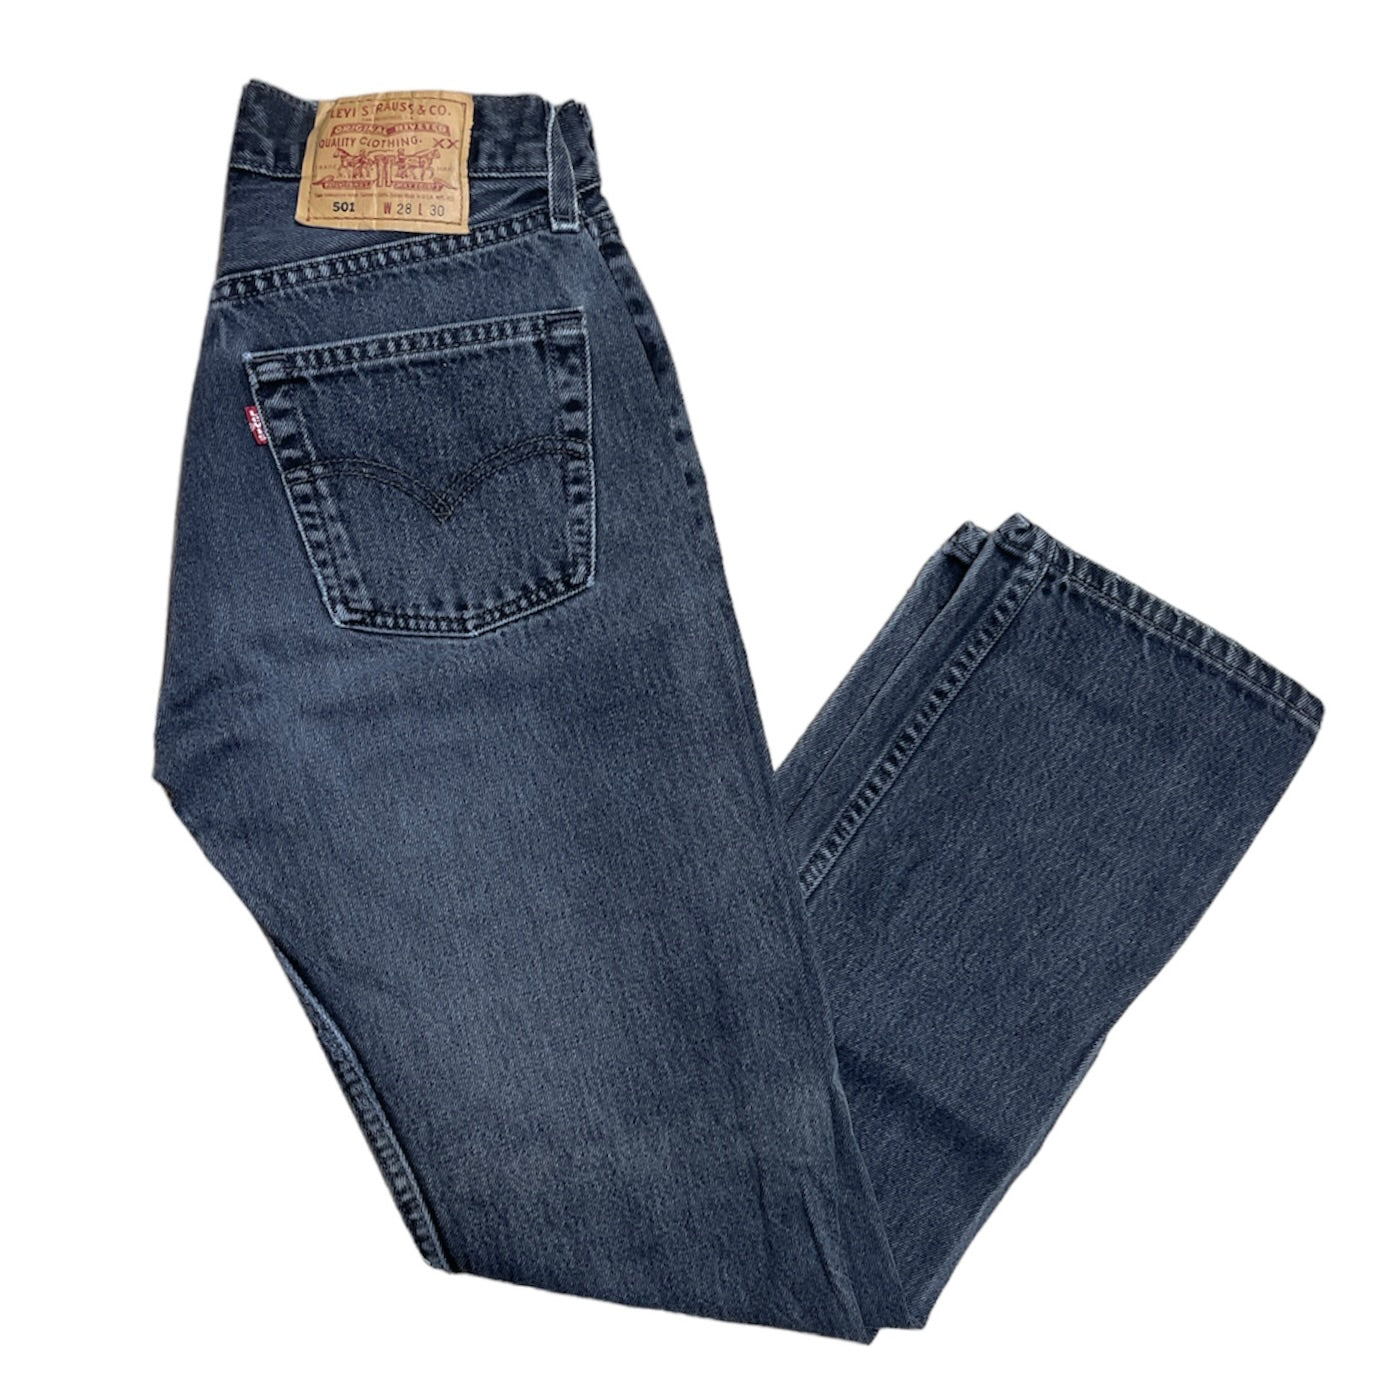 Vintage Levis 501 Black/Grey Jeans (W28/L30)